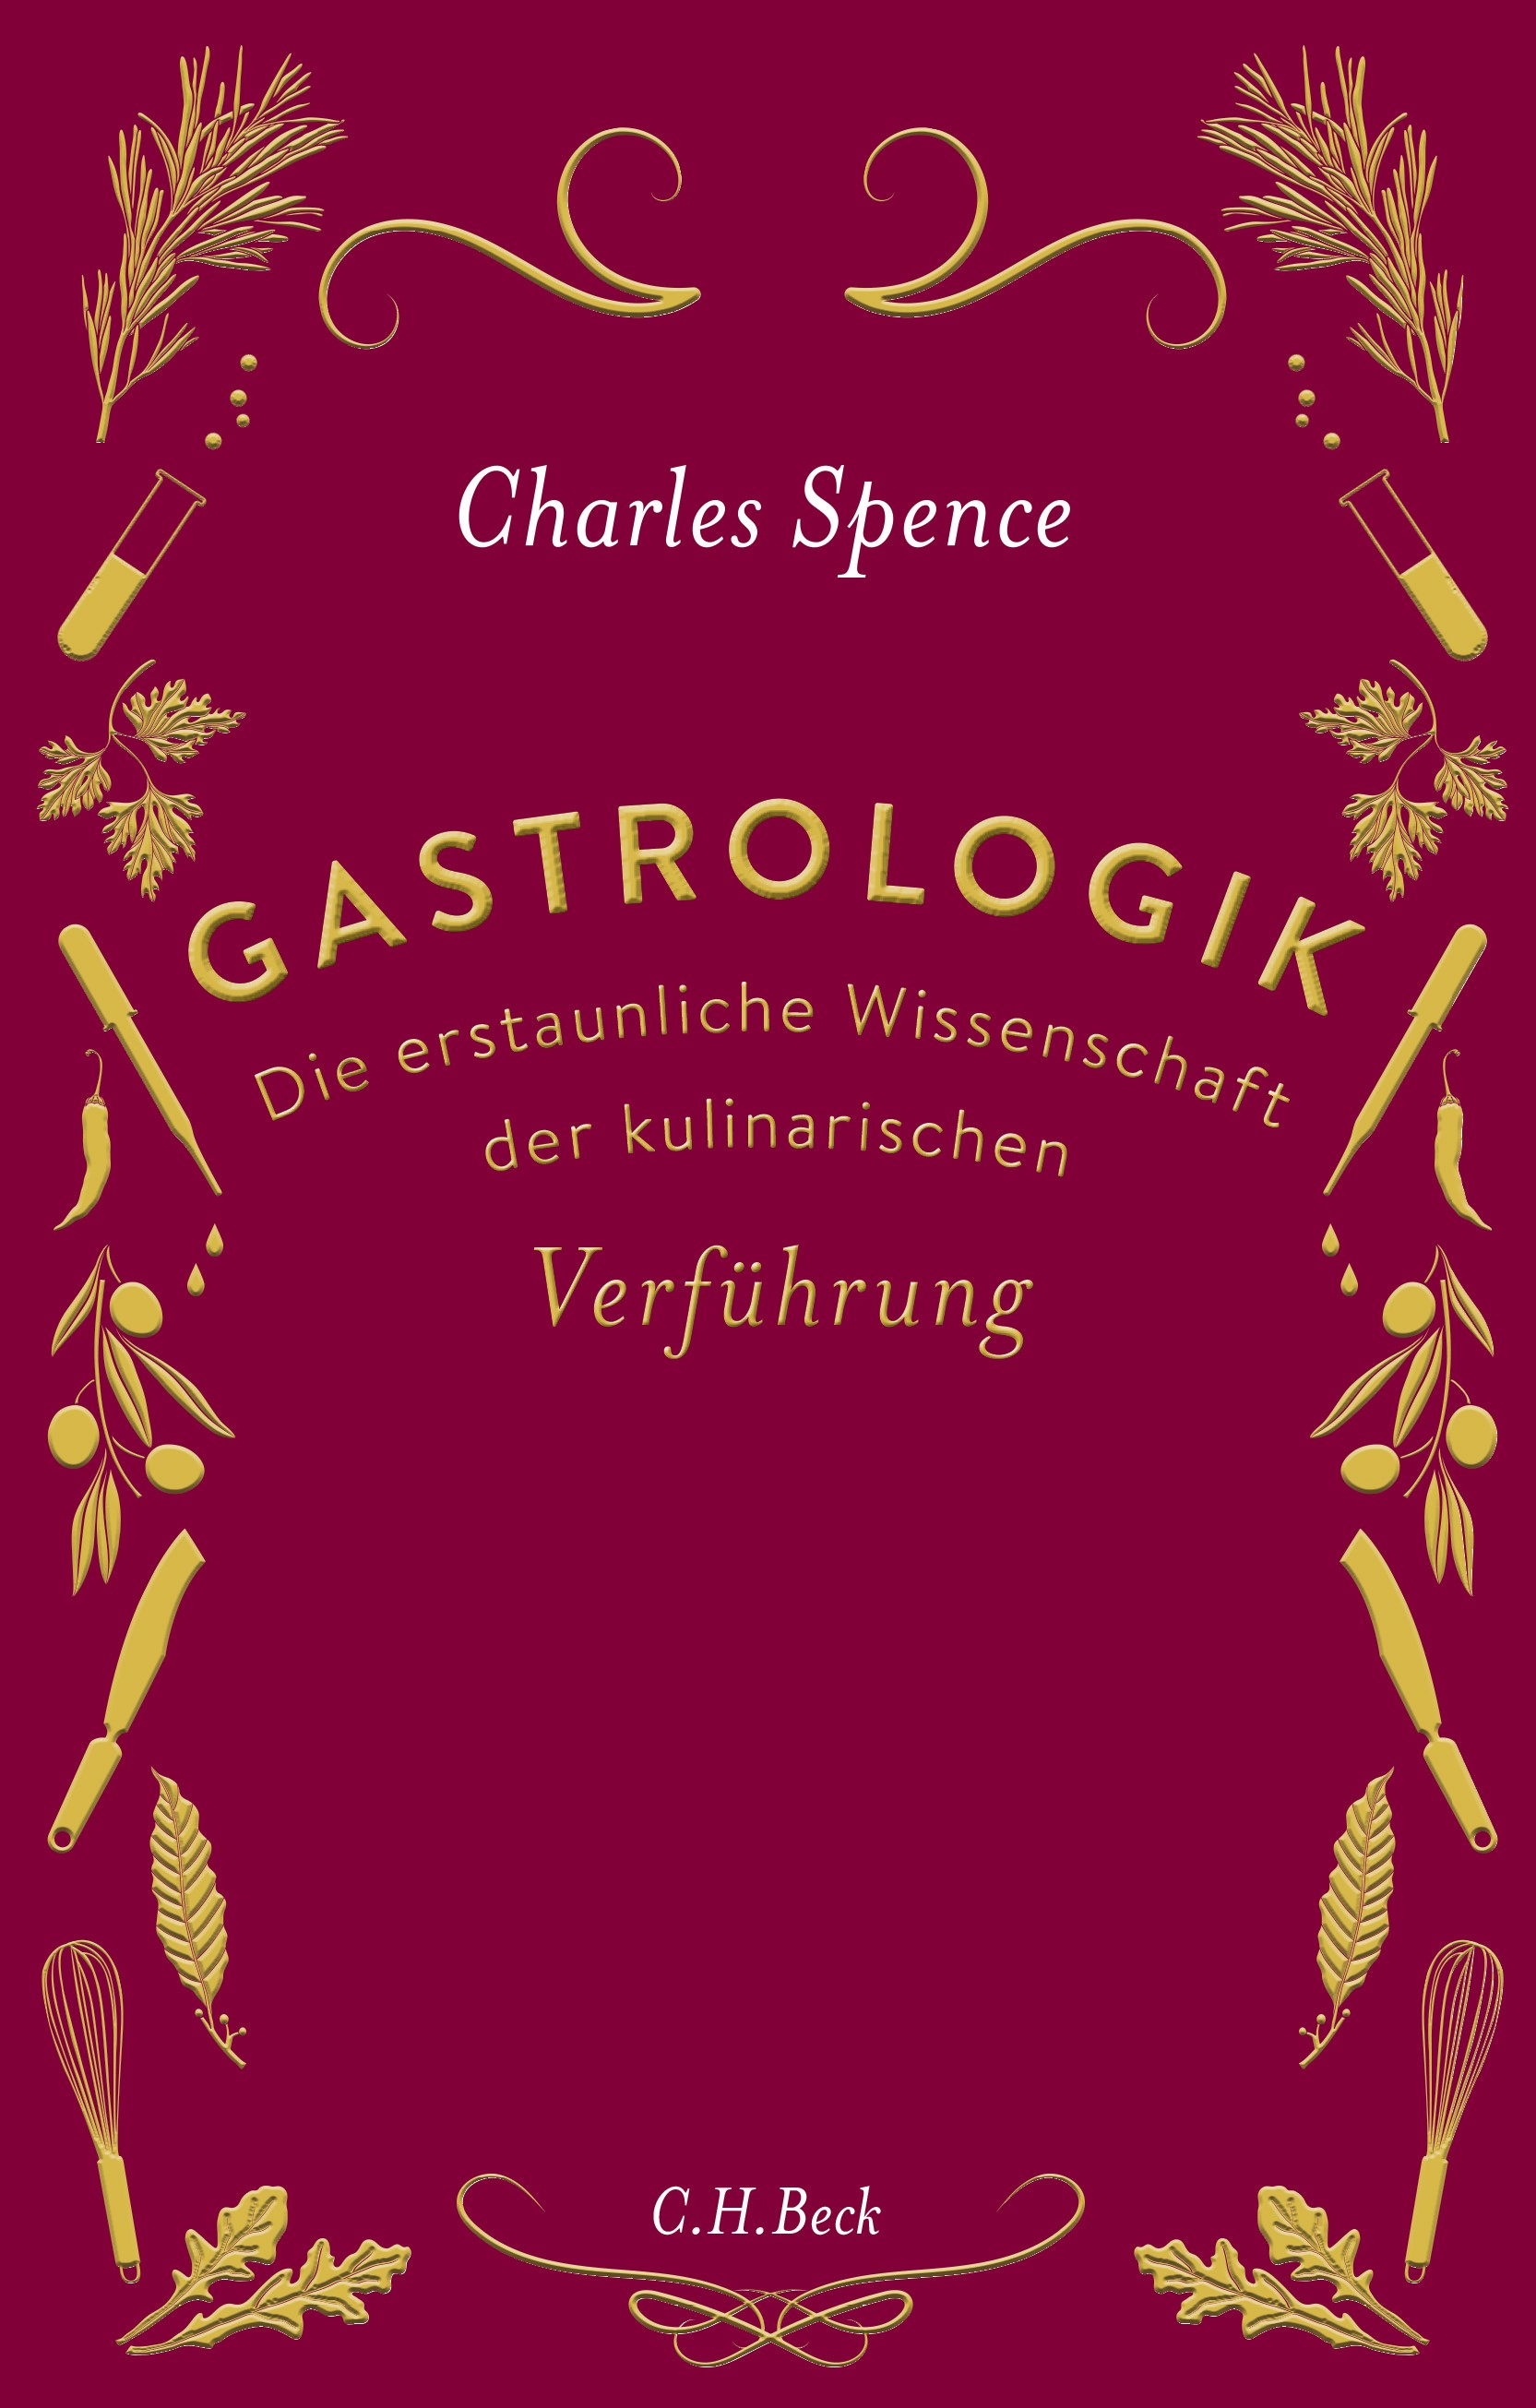 Charles Spence: Gastrologik. Die erstaunliche Wissenschaft der kulinarischen Verführung.